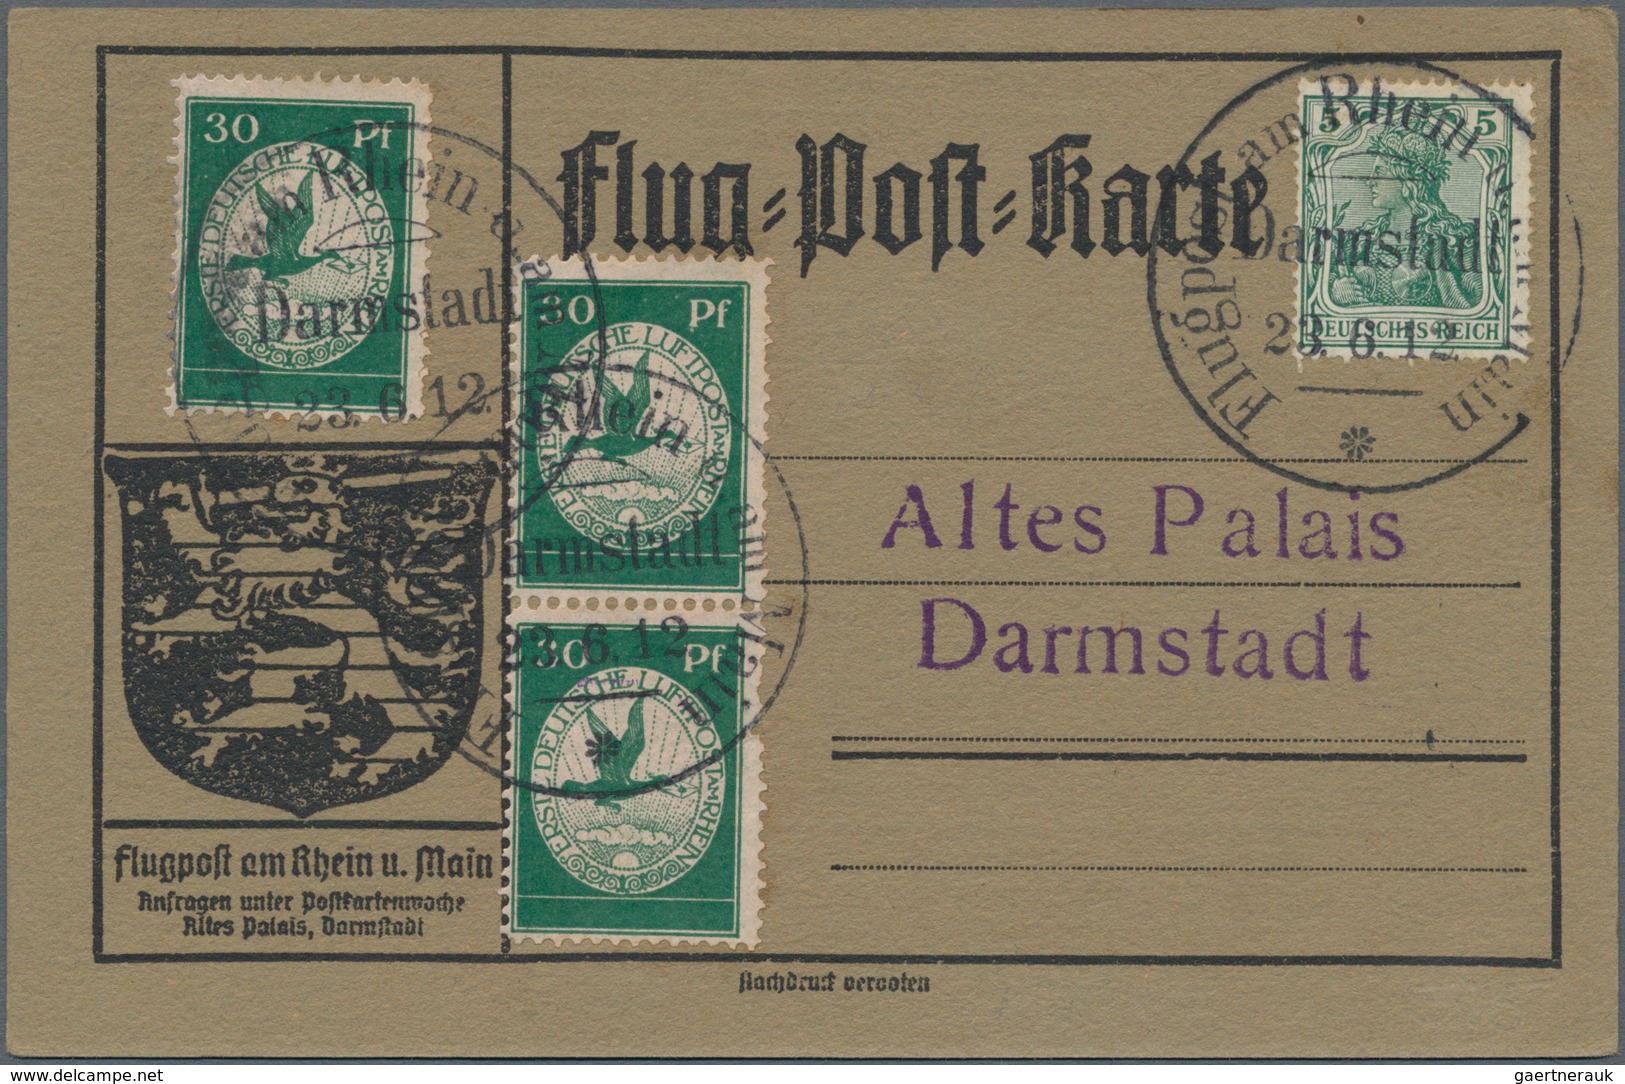 Flugpost Deutschland: 1912, Flugpost Rhein-Main, Belege-Quartett, dabei 10 Pf Flugpostmarke mit 10 P